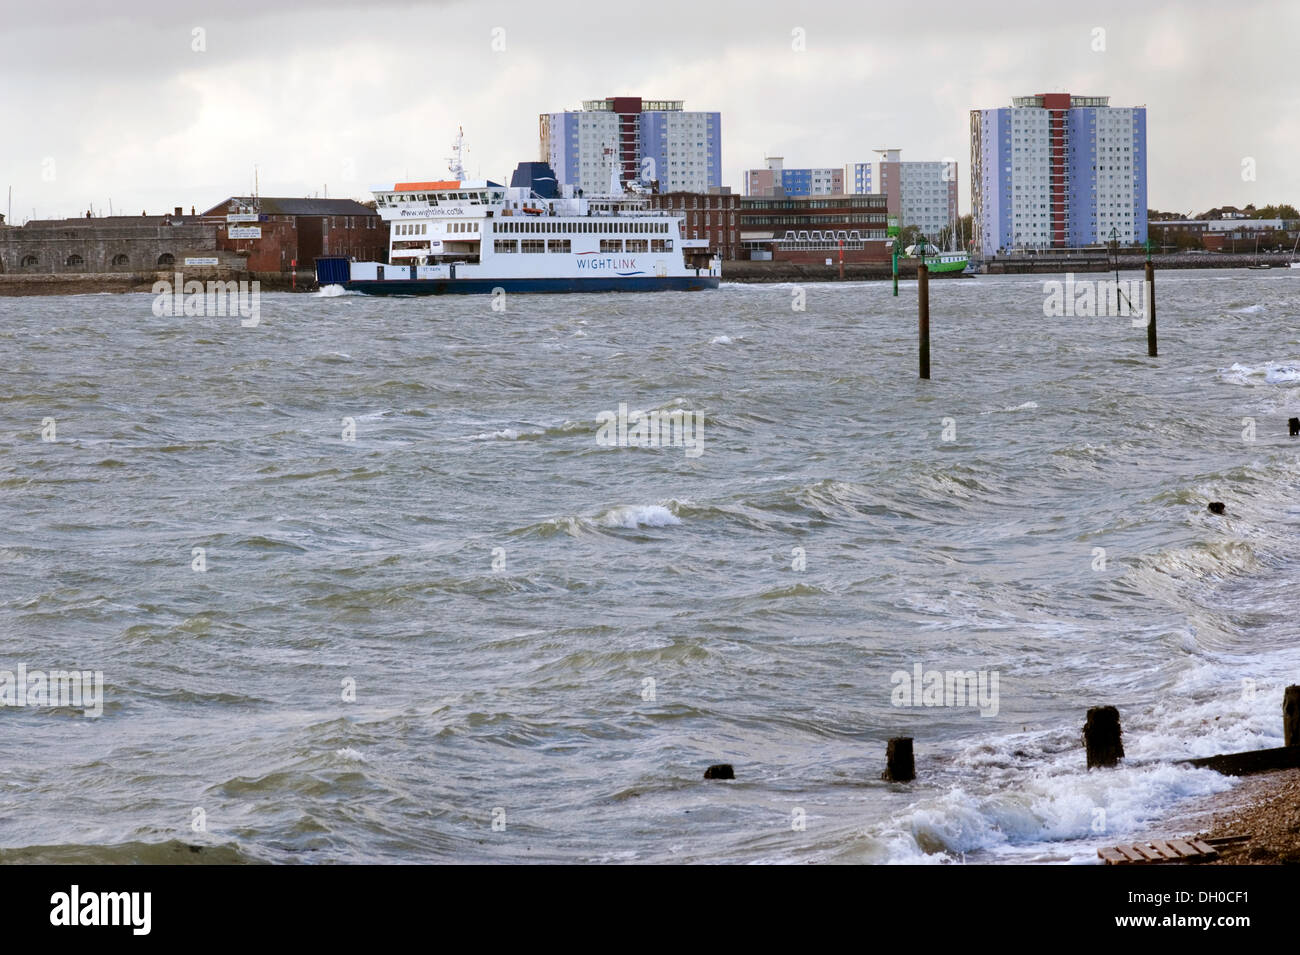 Ferry wightlink santa fe navegando por aguas turbulentas en Southsea al final de St Jude storm uk Foto de stock